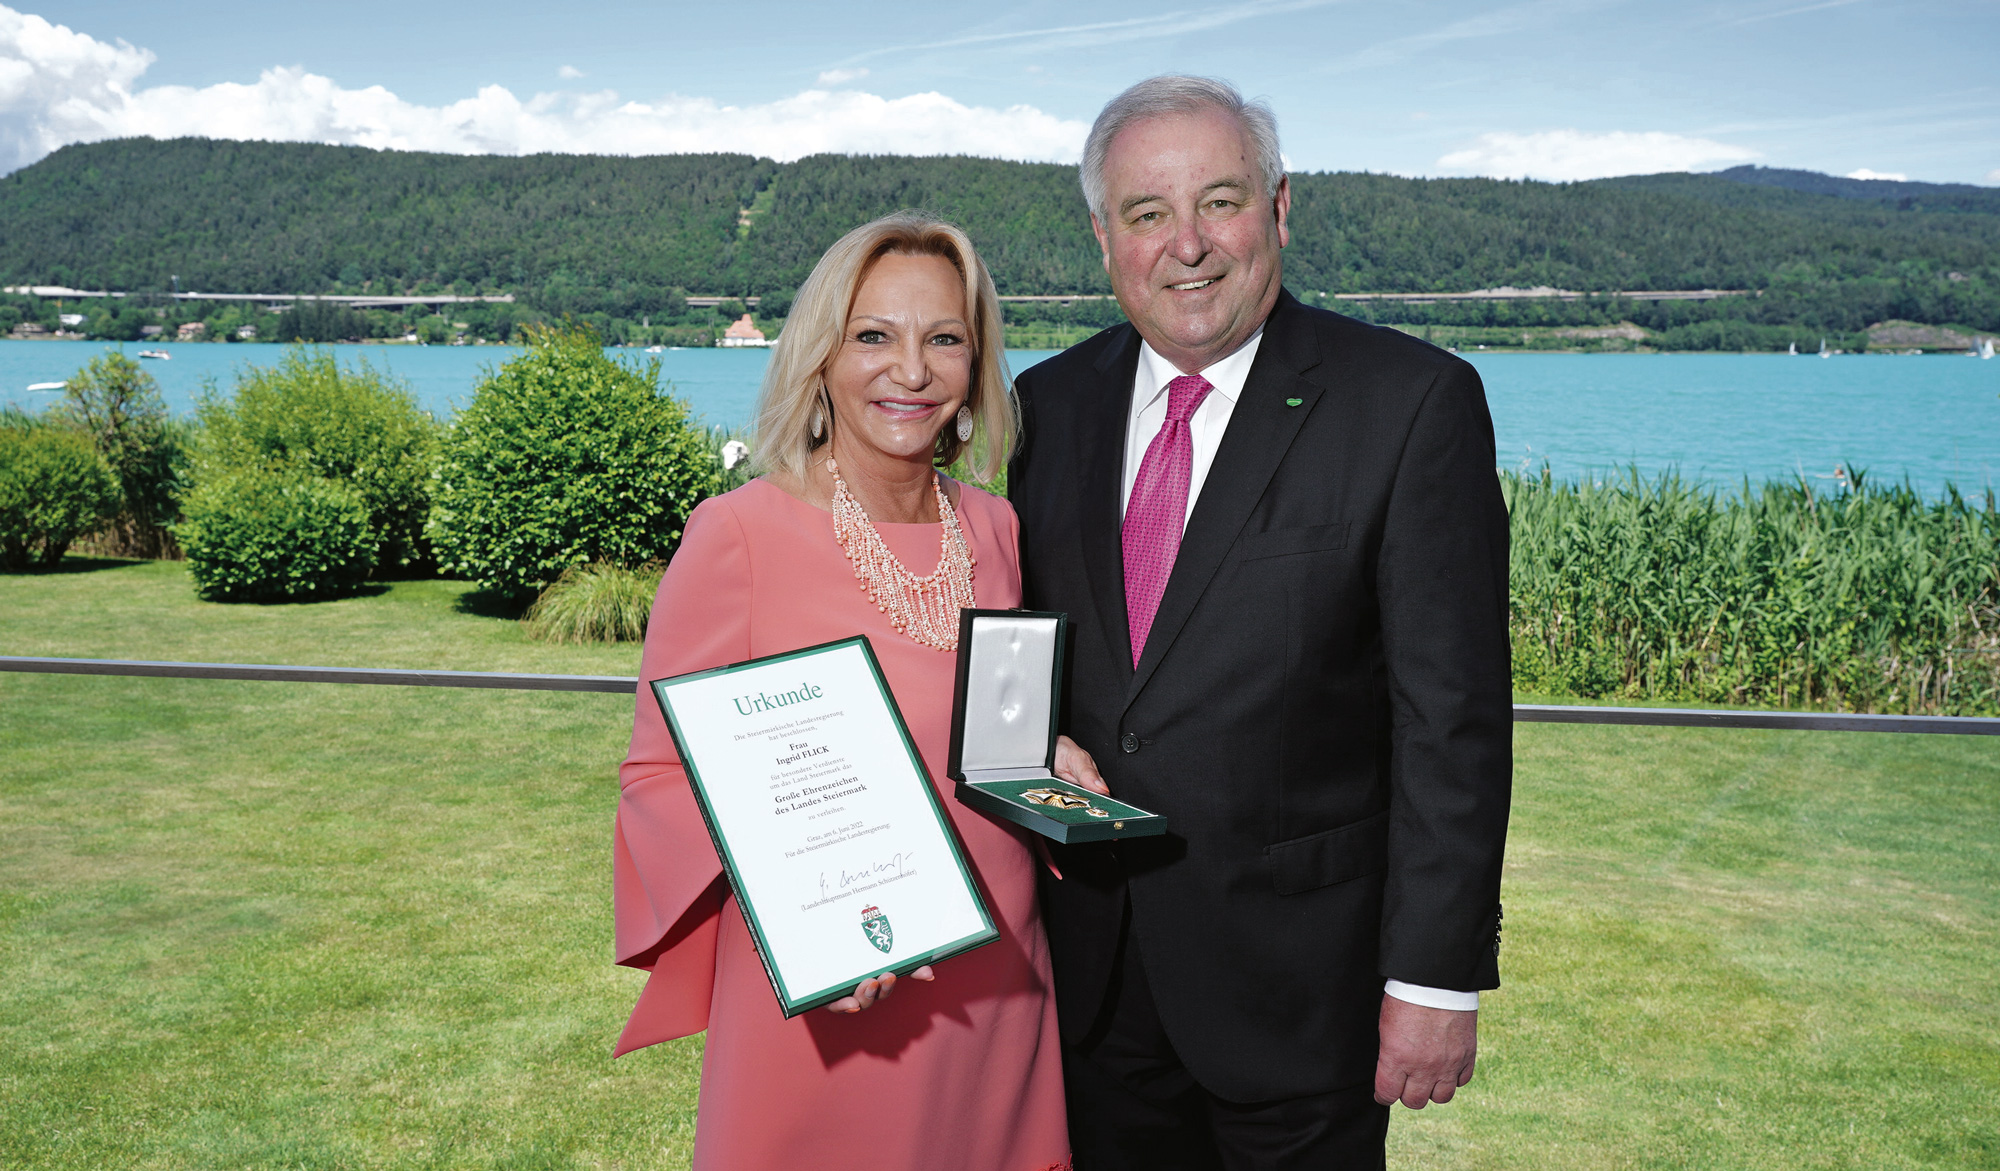 KinderAkademie-Schutzherrin Ingrid Flick wurde kürzlich das Große Goldene Ehrenzeichen des Landes Steiermark verliehen. (Foto: Andreas Tischler/Vienna Press)